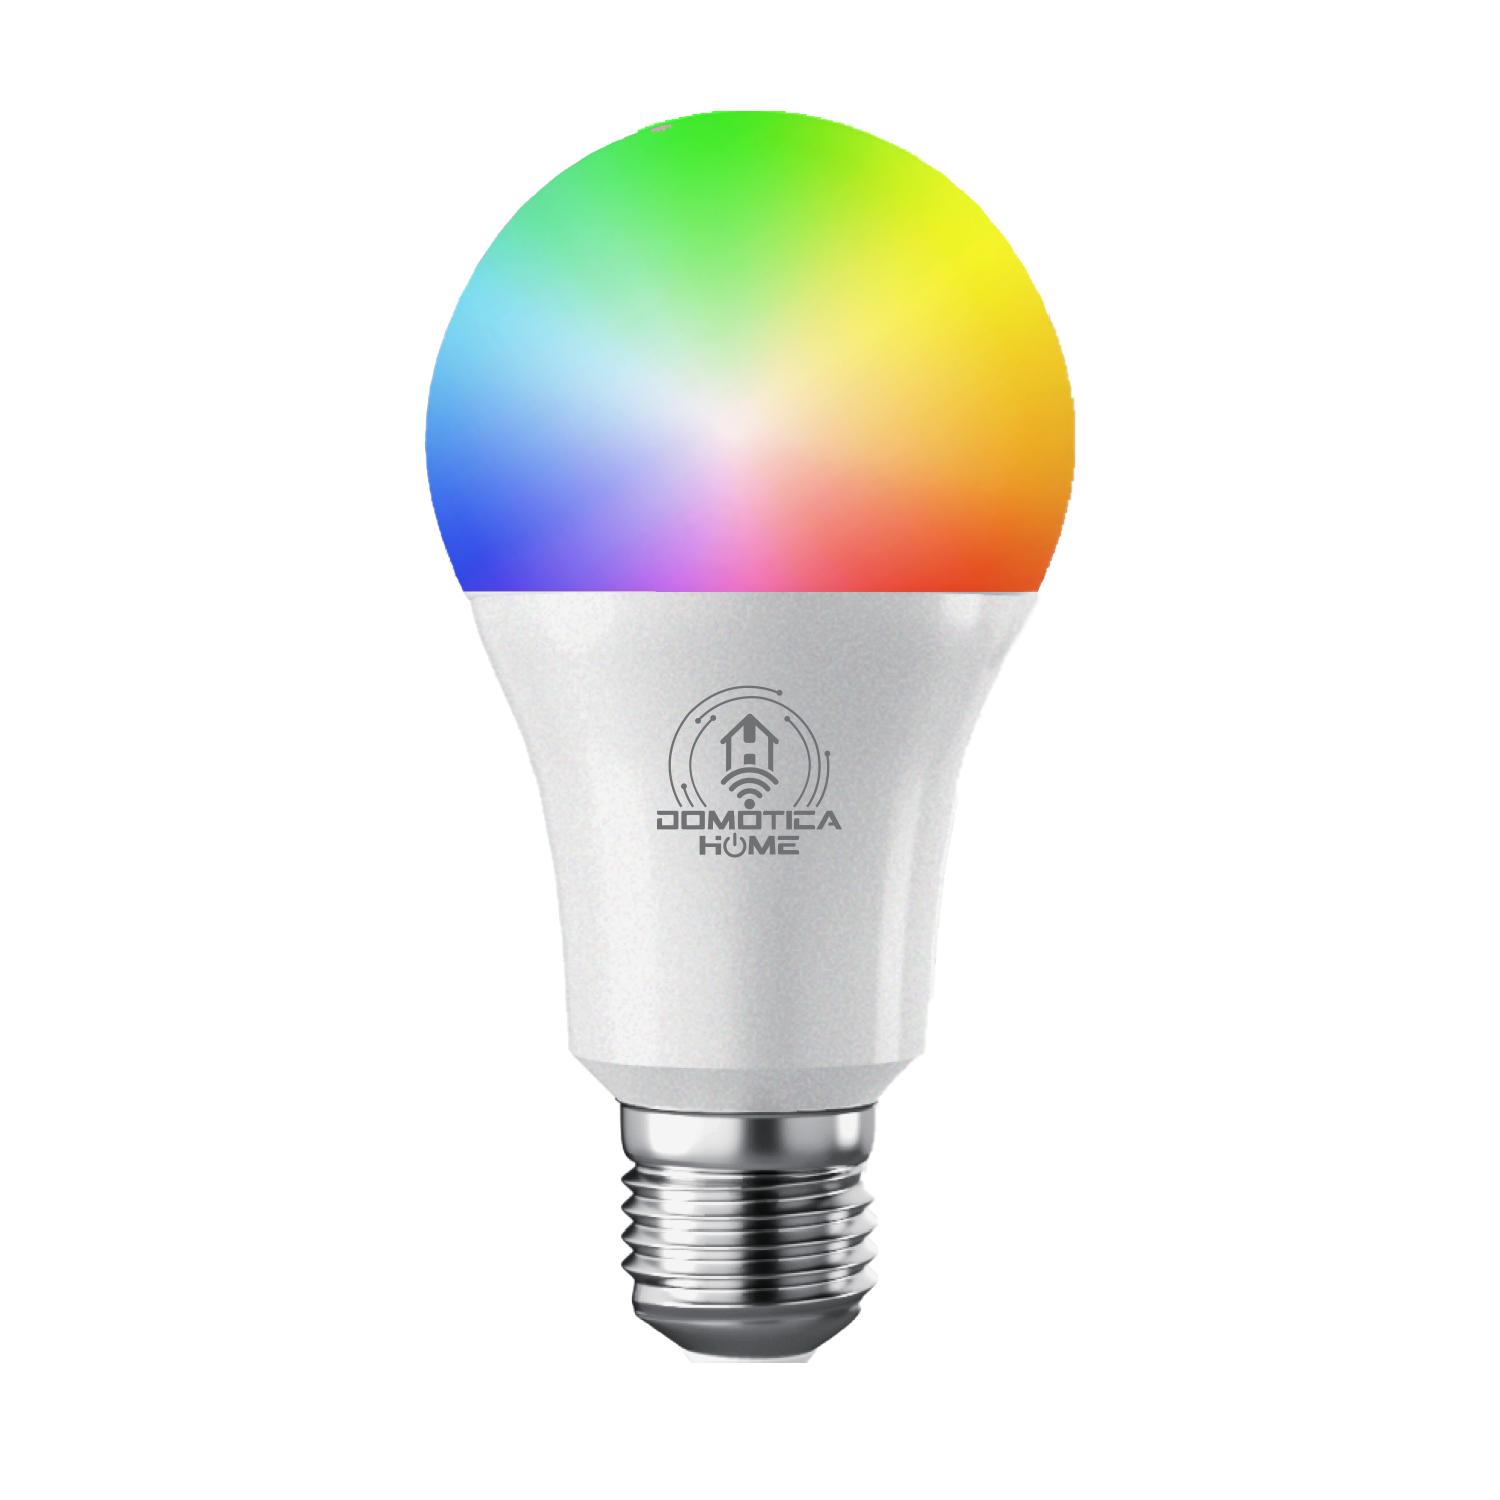 Foco Inteligente WiFi, Multicolor + Luz Blanca Fría y Cálida (RGB + Rango  de Luz Blanca 2700K a 6500K, 800 Lumens en Luces Blancas), Compatible con